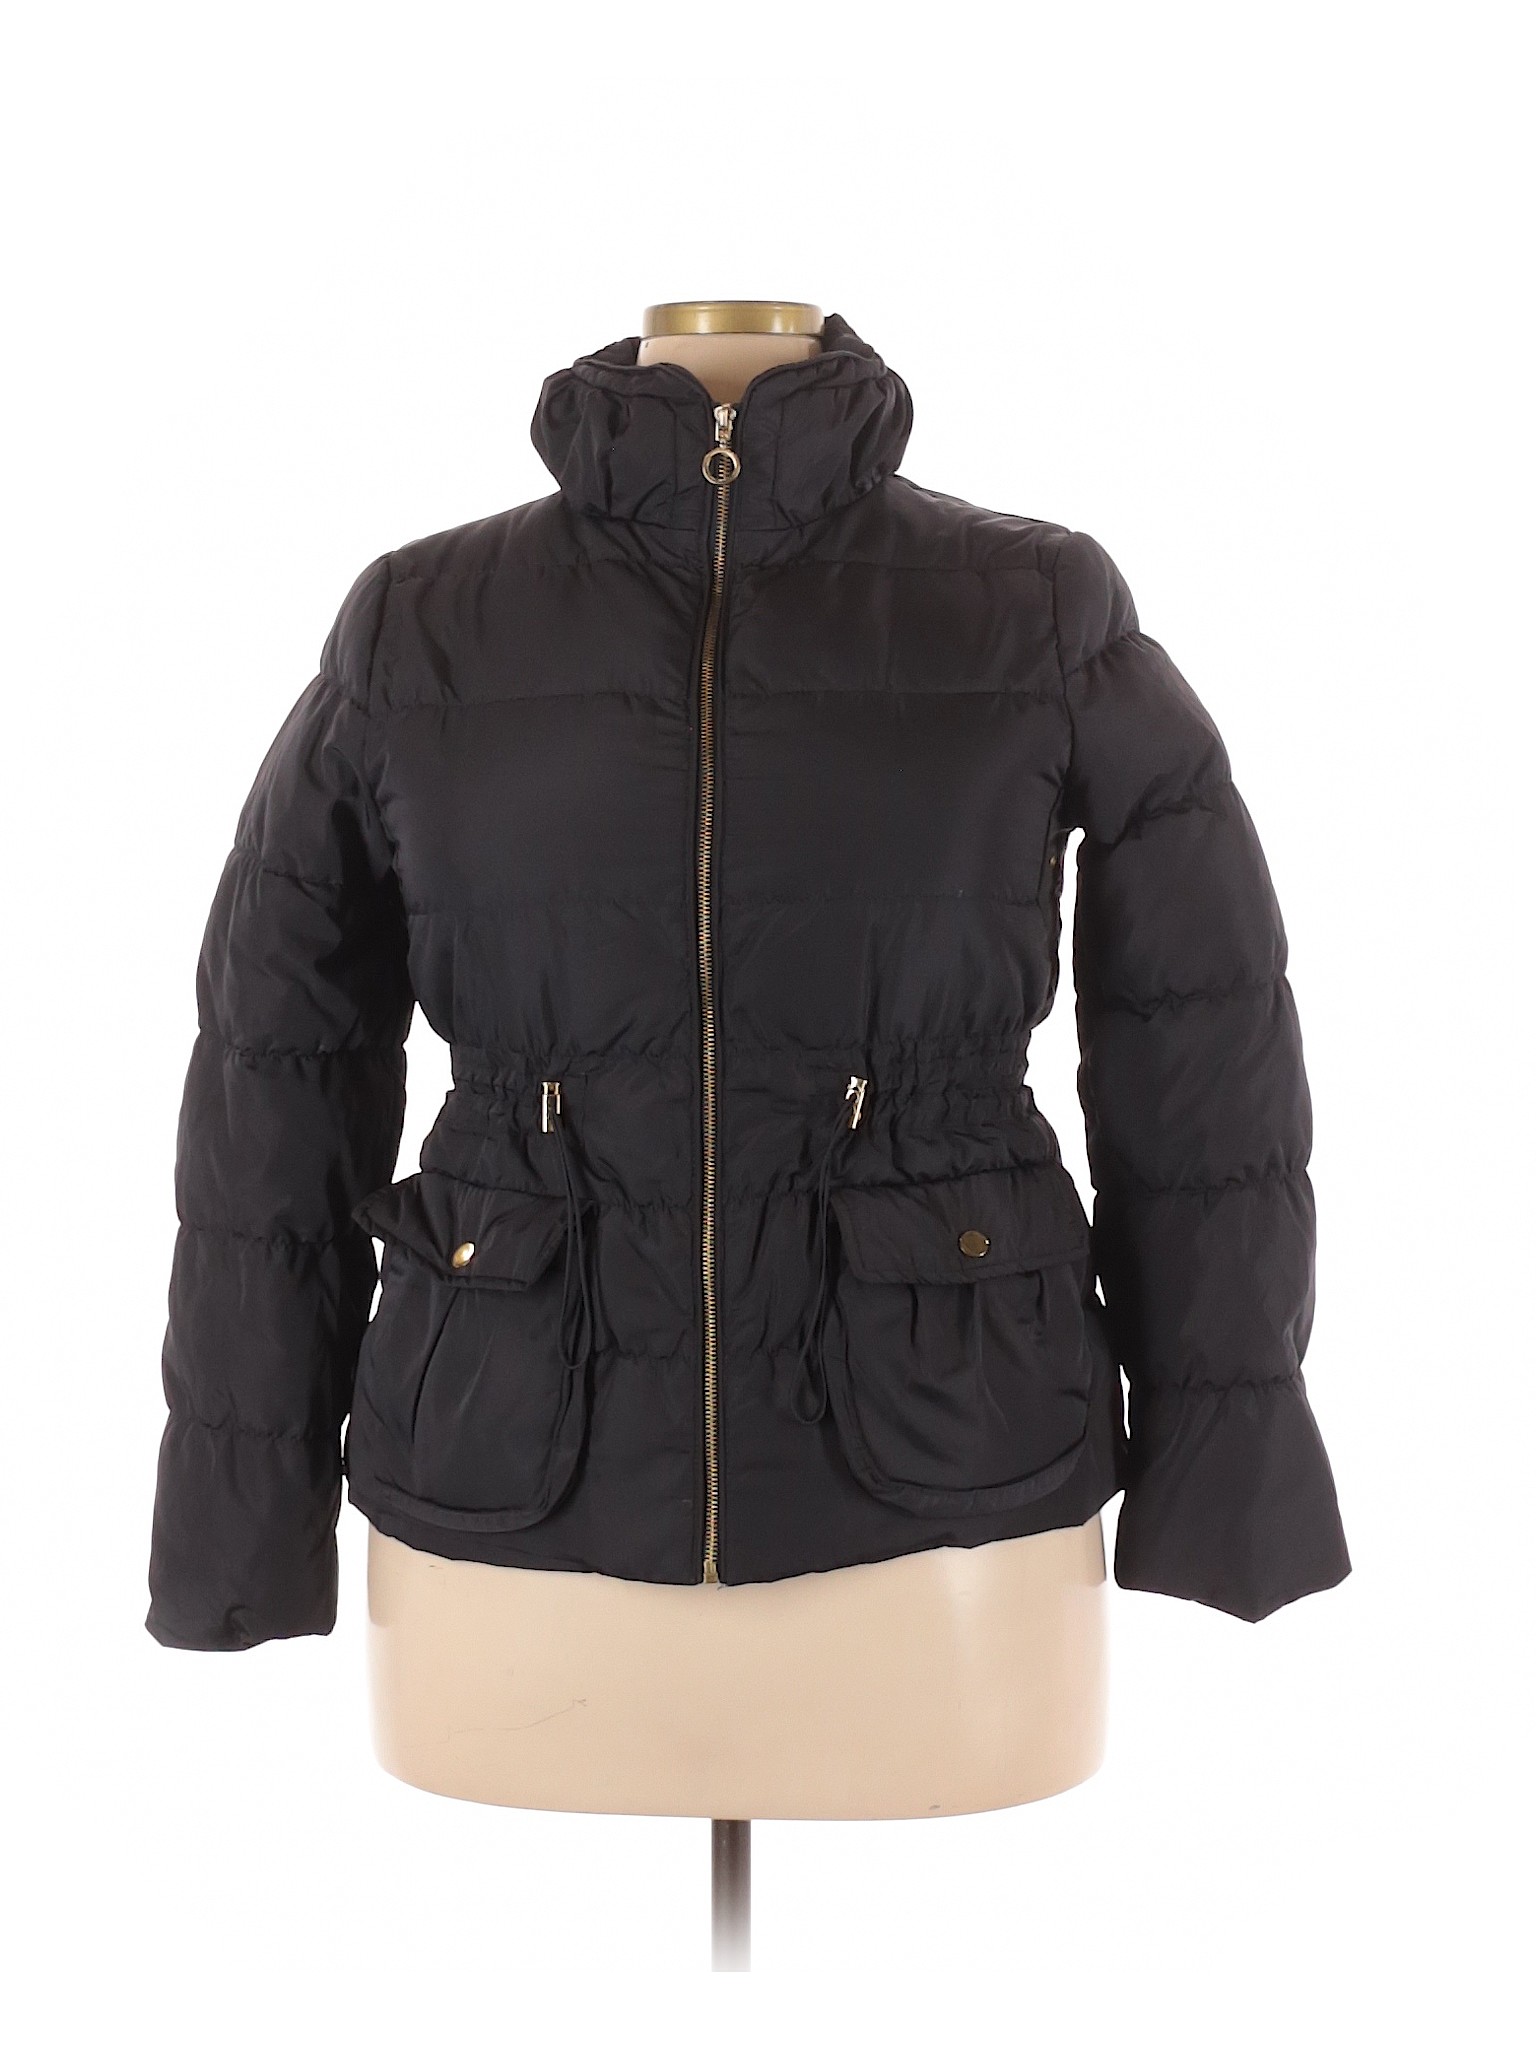 Zara Women Black Jacket XXL | eBay